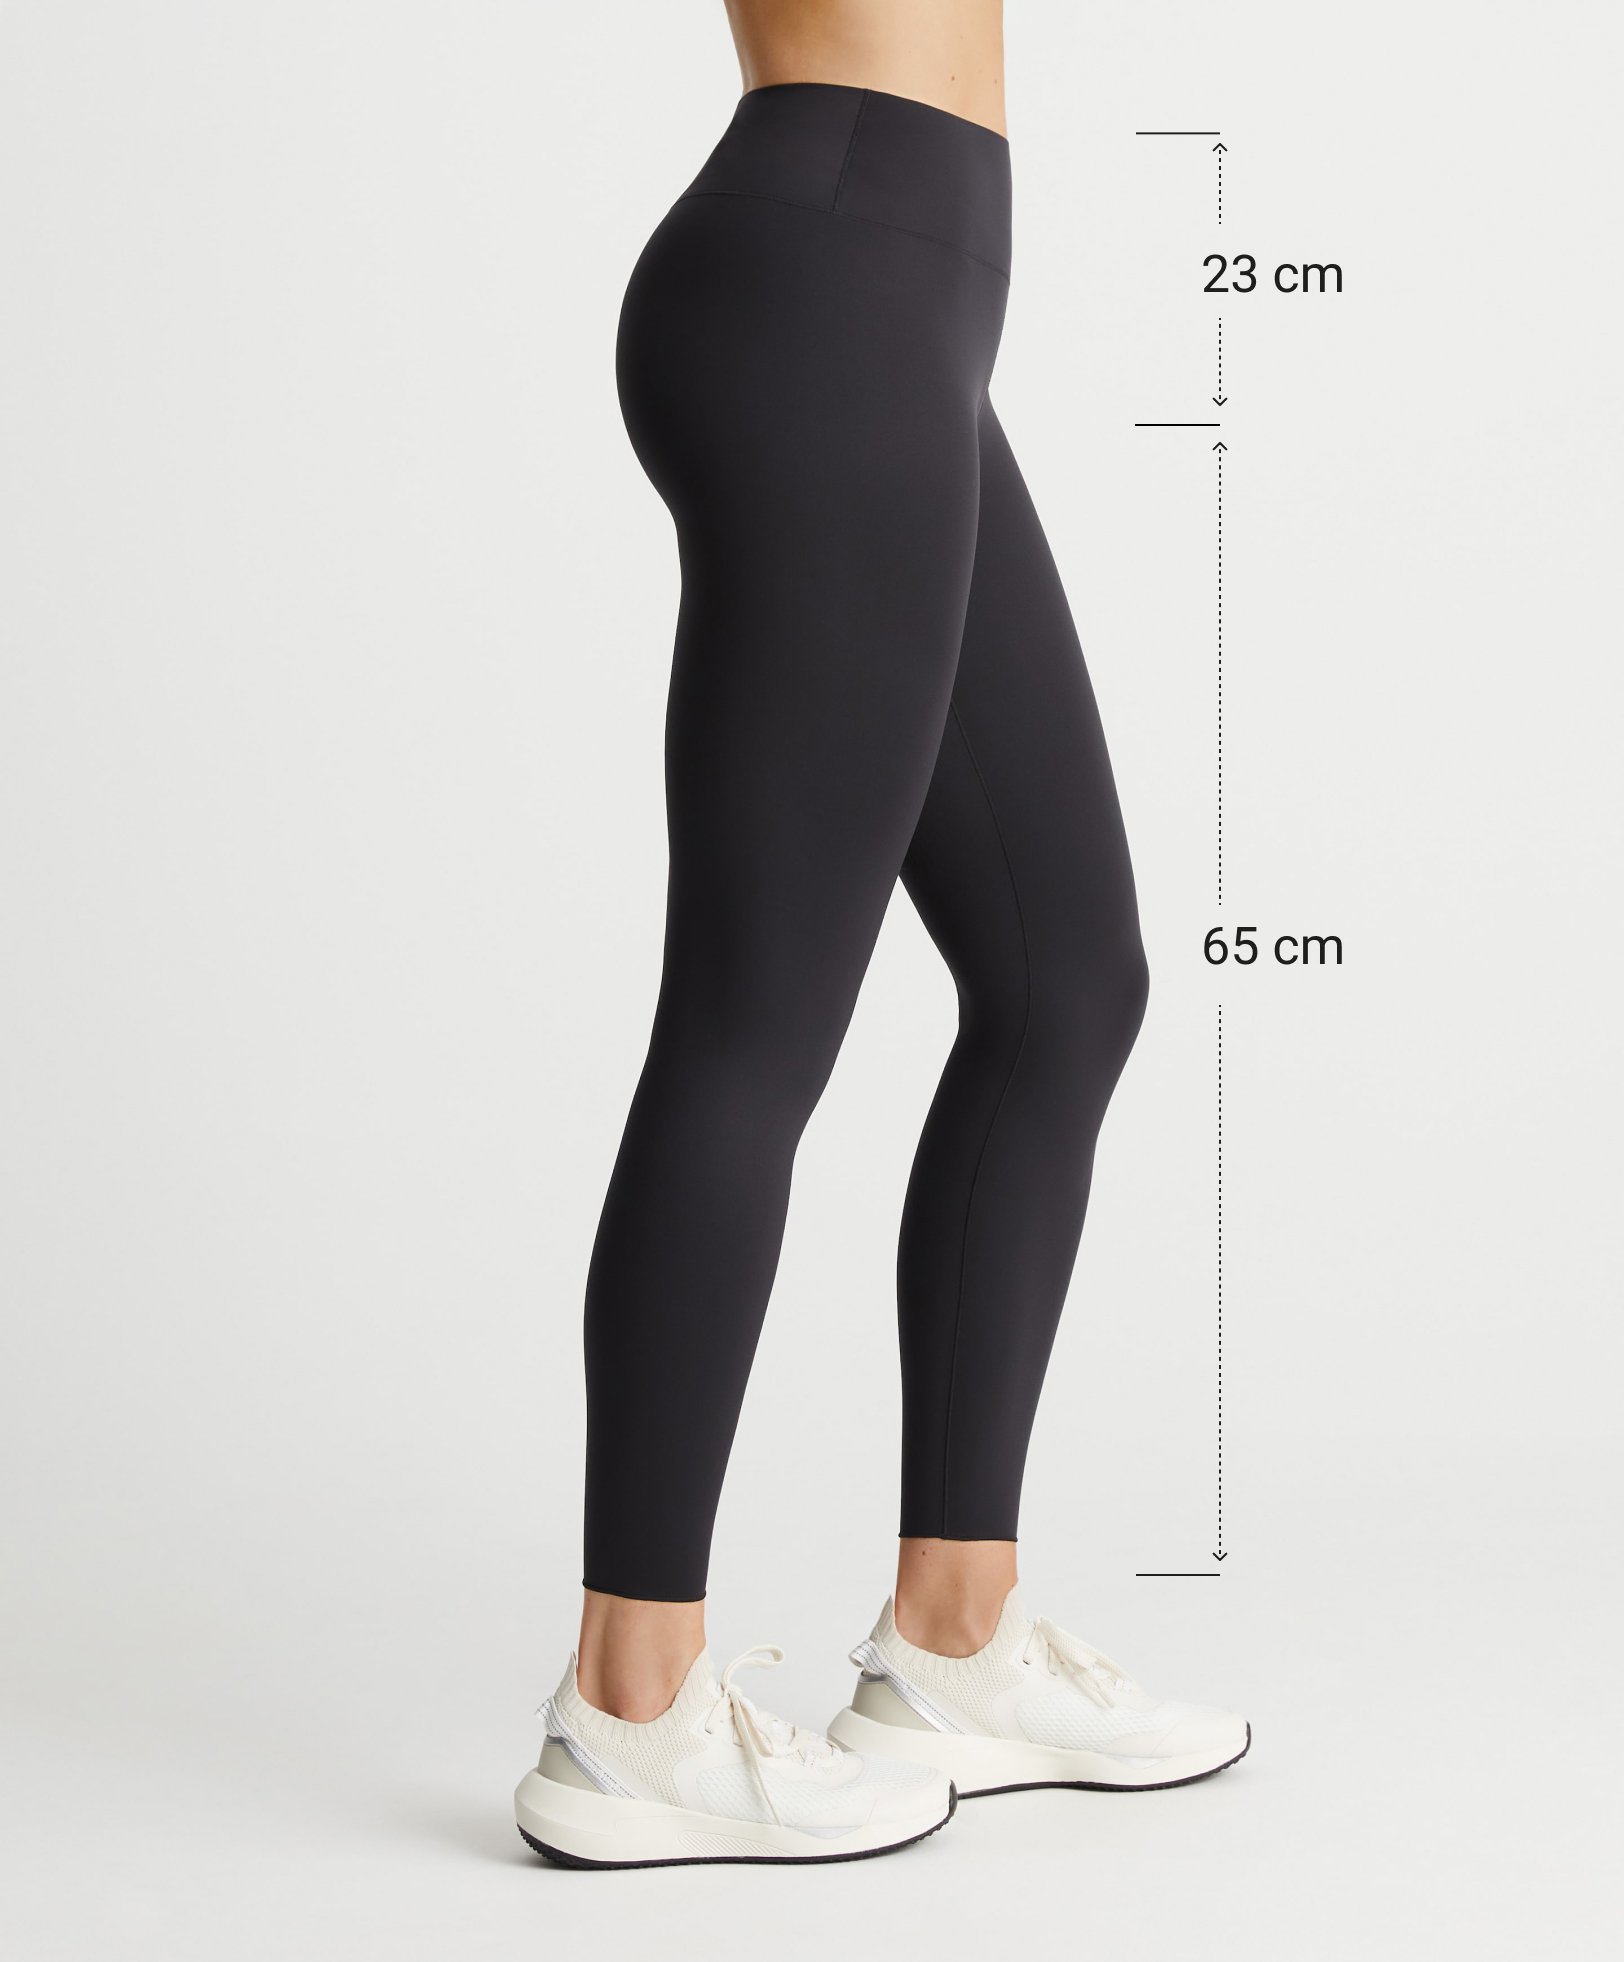 Ankellange leggings, medium rise, perfect adapt, 65 cm